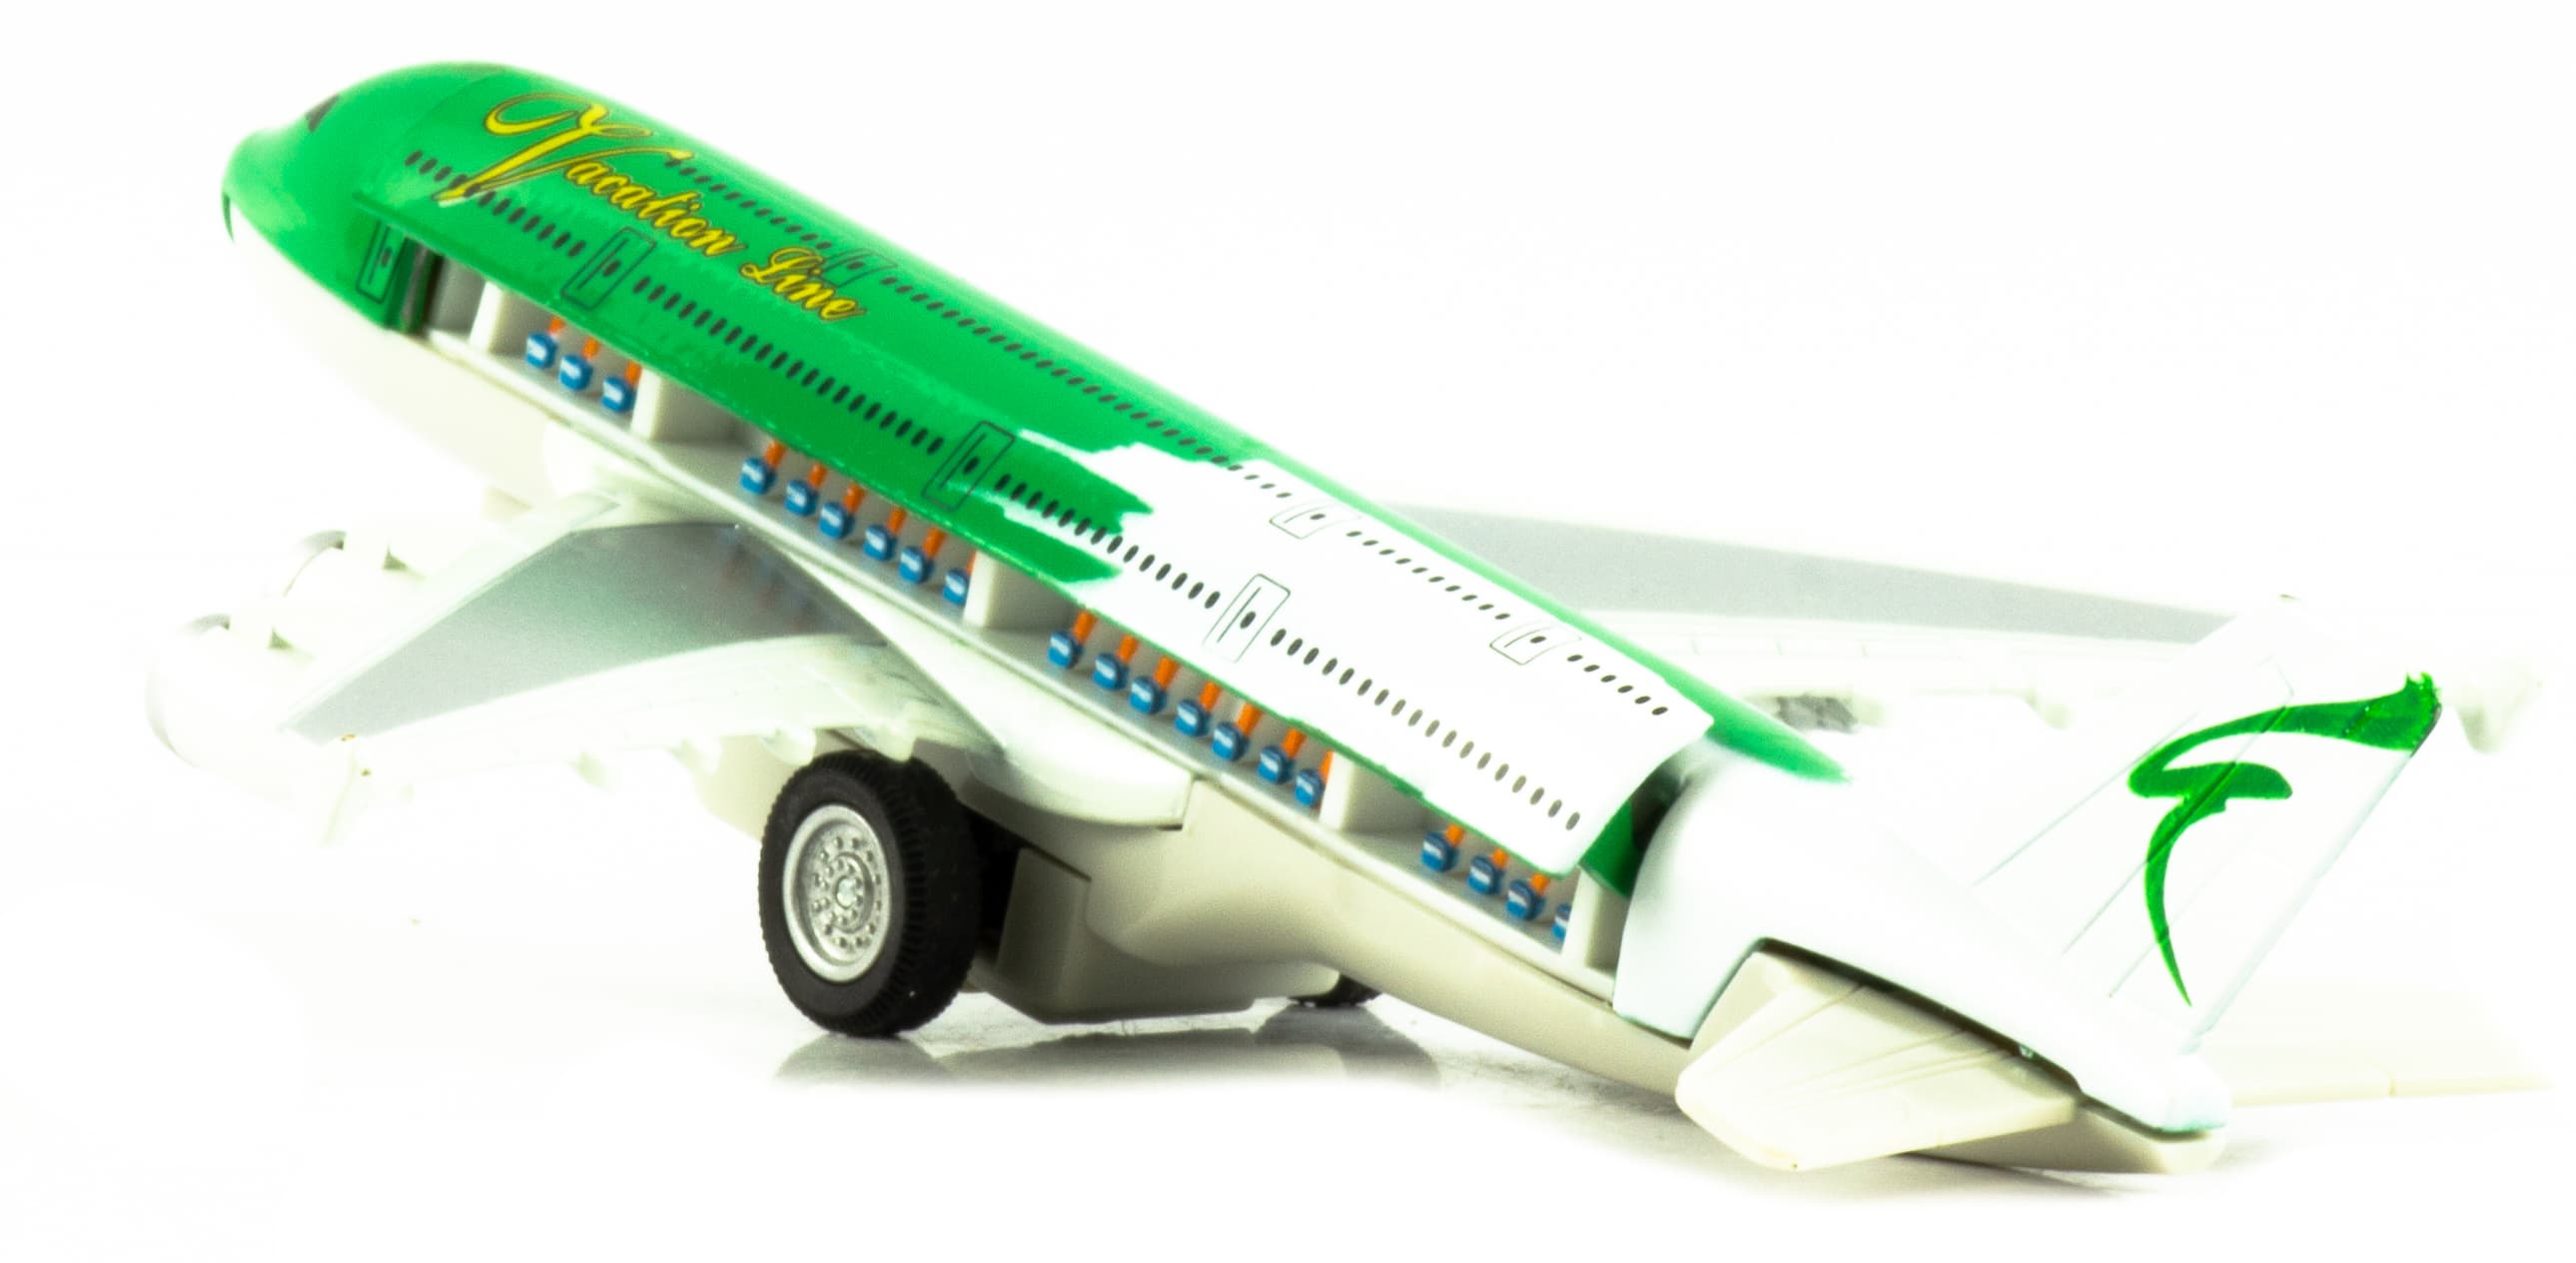 Металлический самолет «Vacation Line» 19 см. 805, инерционный, Sceno Jet, / Бело-зеленый